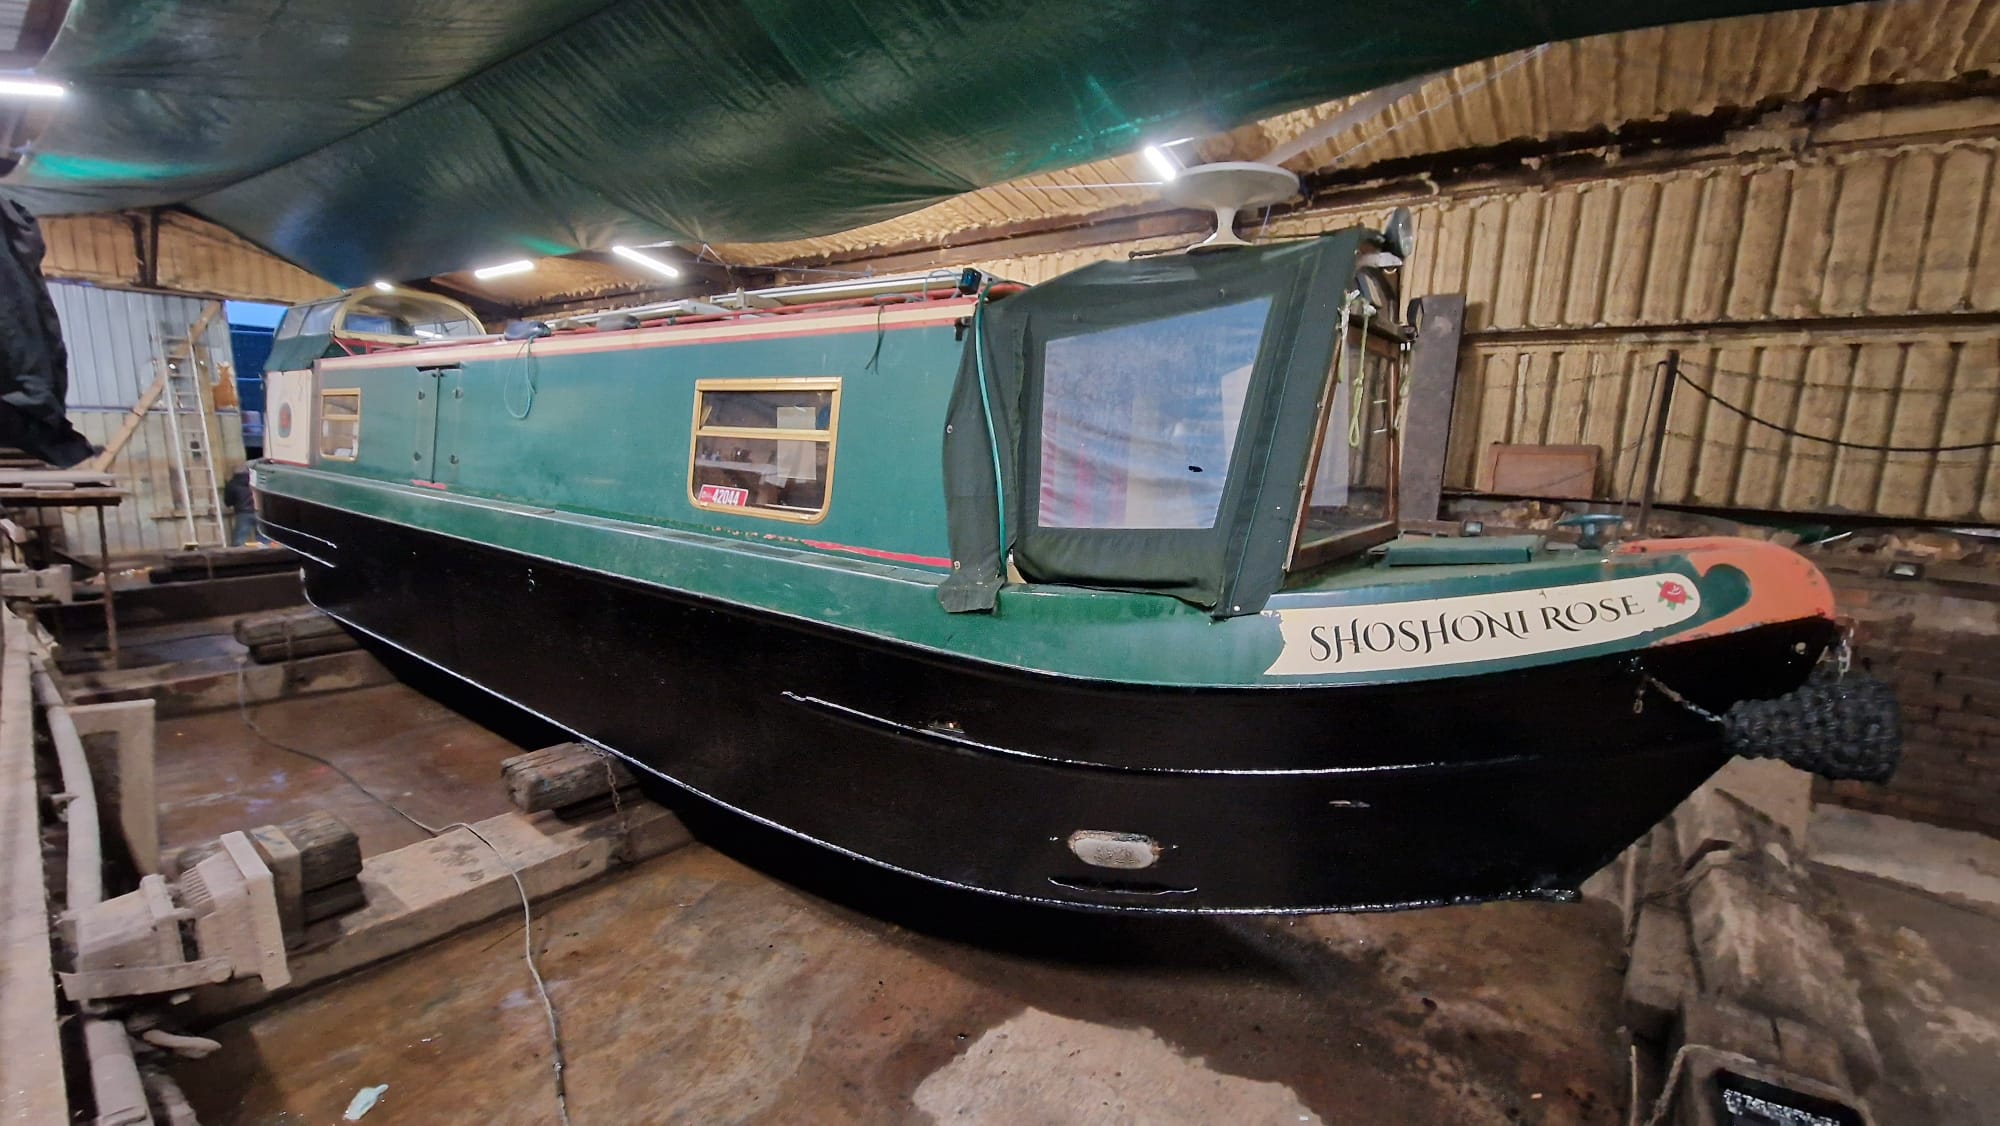 NB Shoshoni Rose - 41ft reverse layout semi trad stern narrowboat for sale. 7